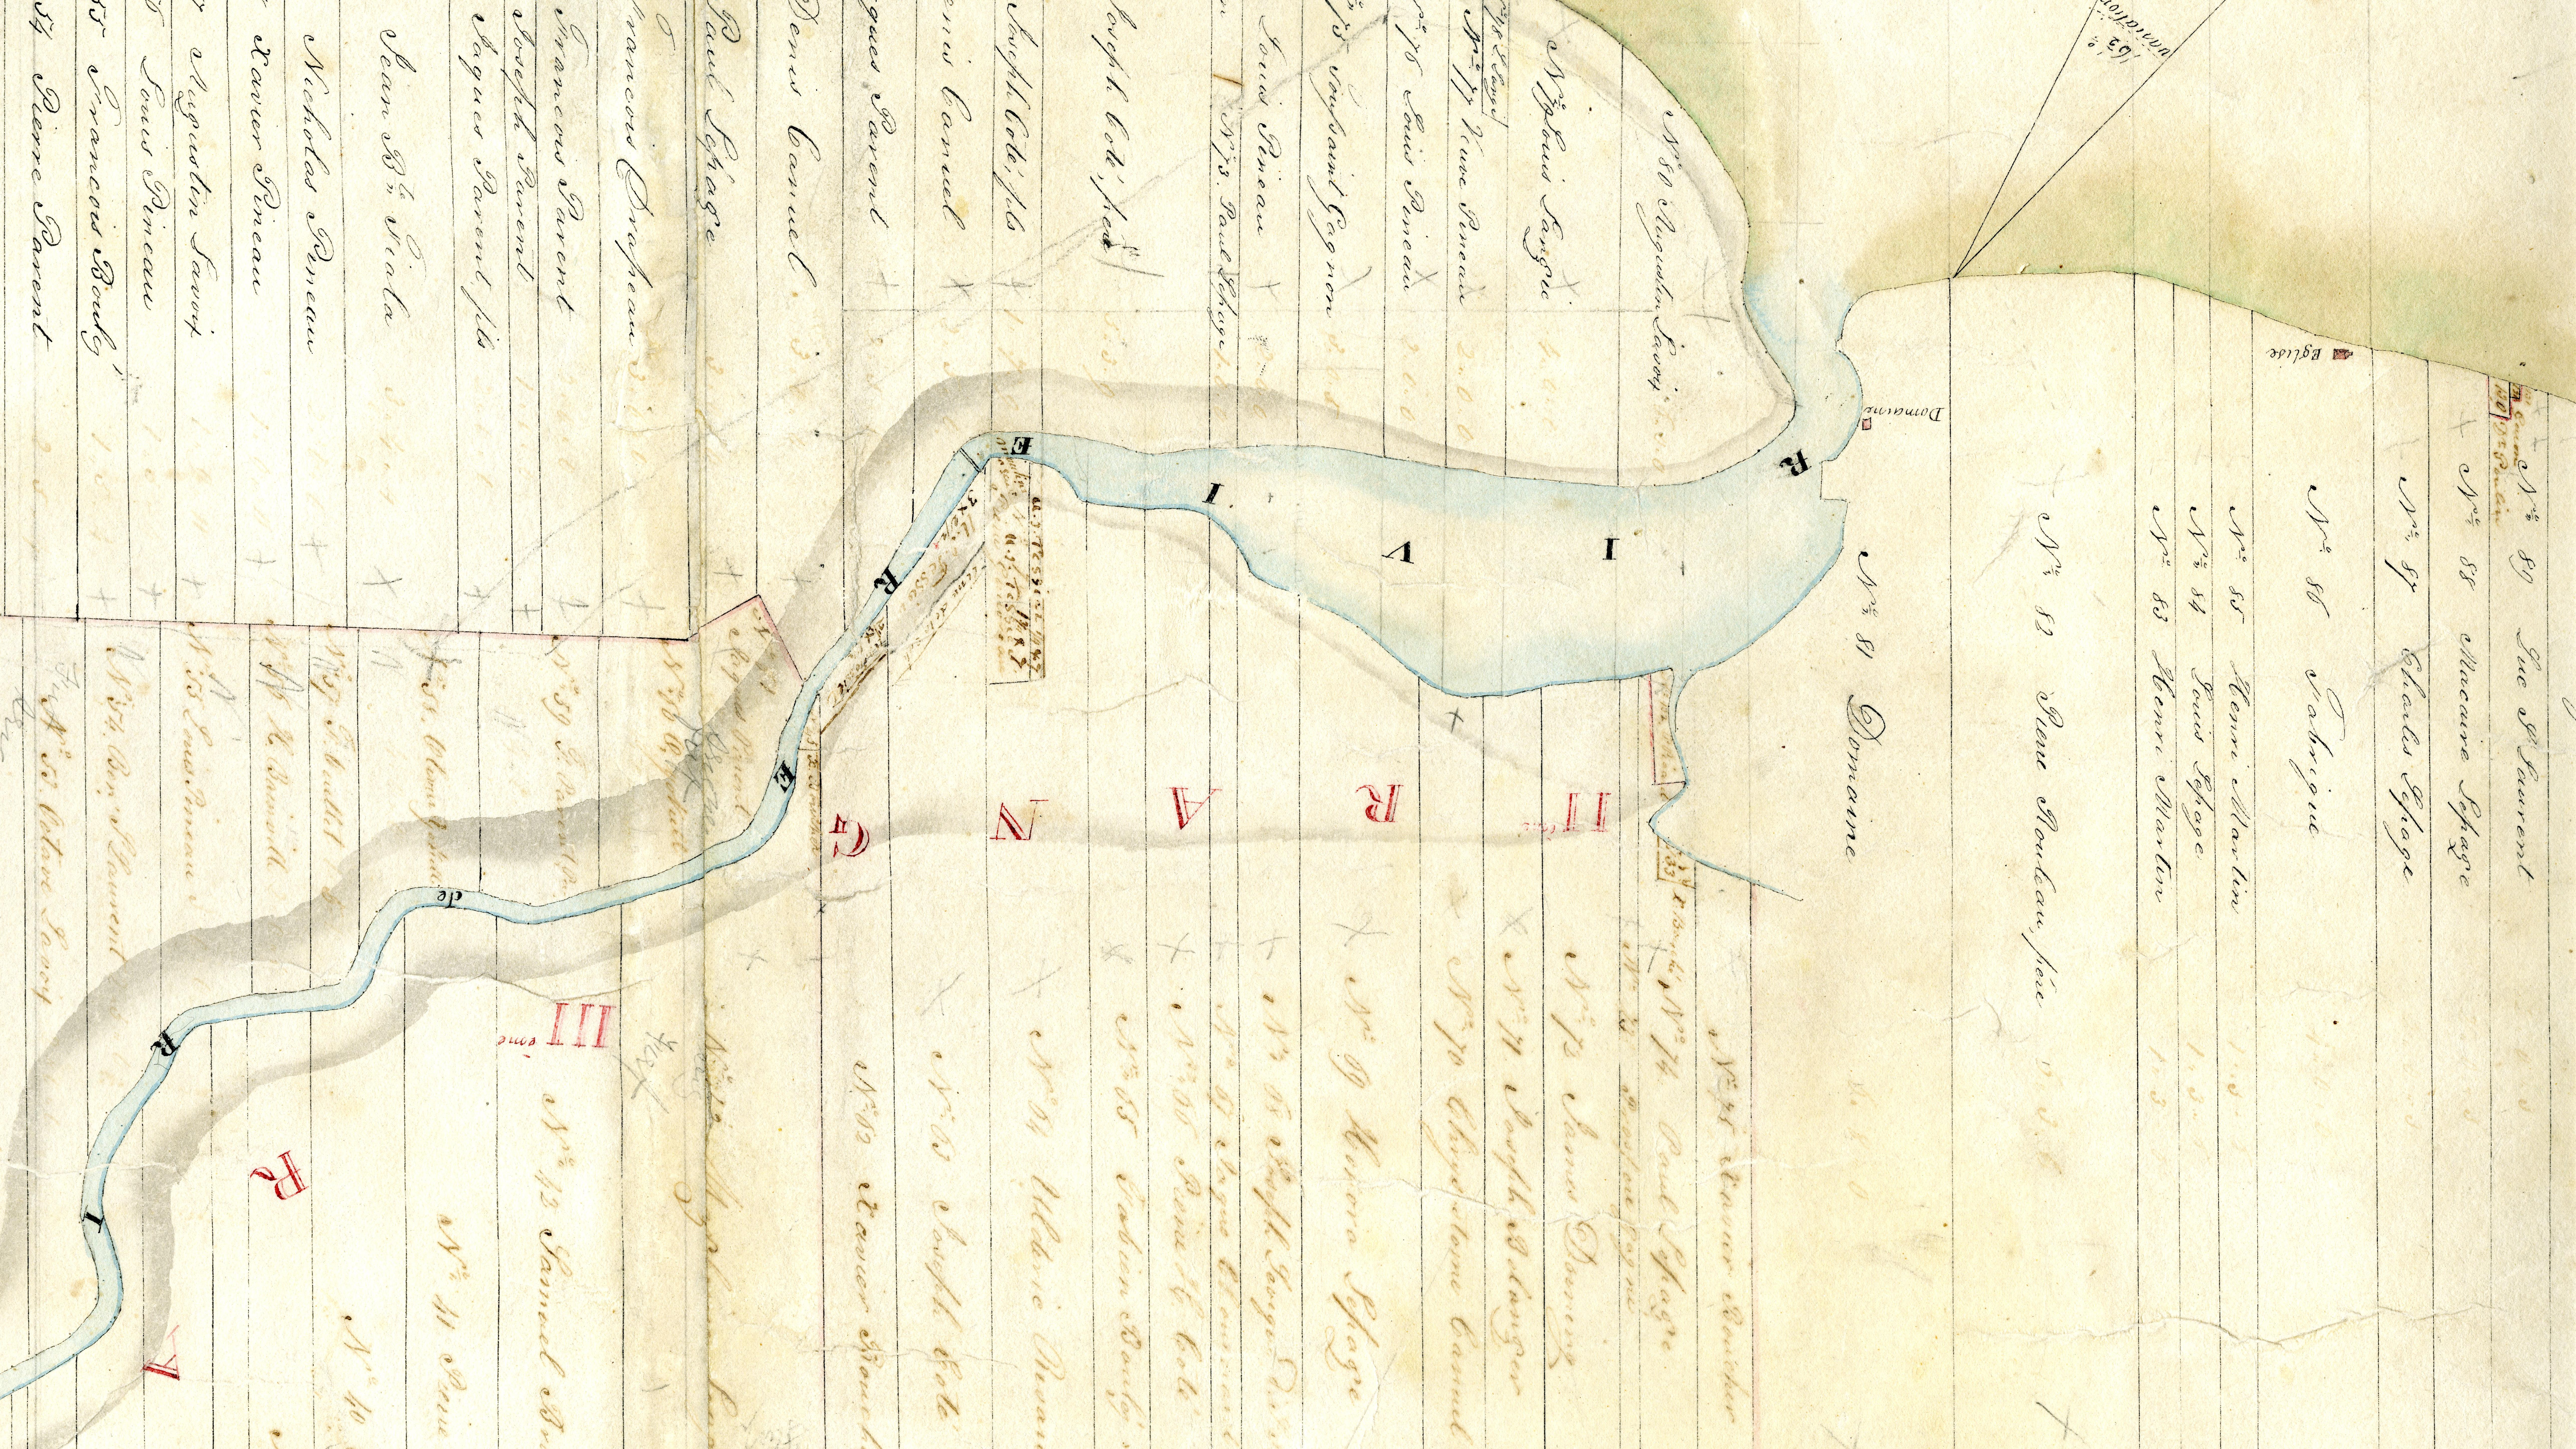 Dans ce plan de la seigneurie de Rimouski daté de 1840, la maison dite du Domaine est identifiée sur la rive droite de la rivière, près de l'embouchure. 